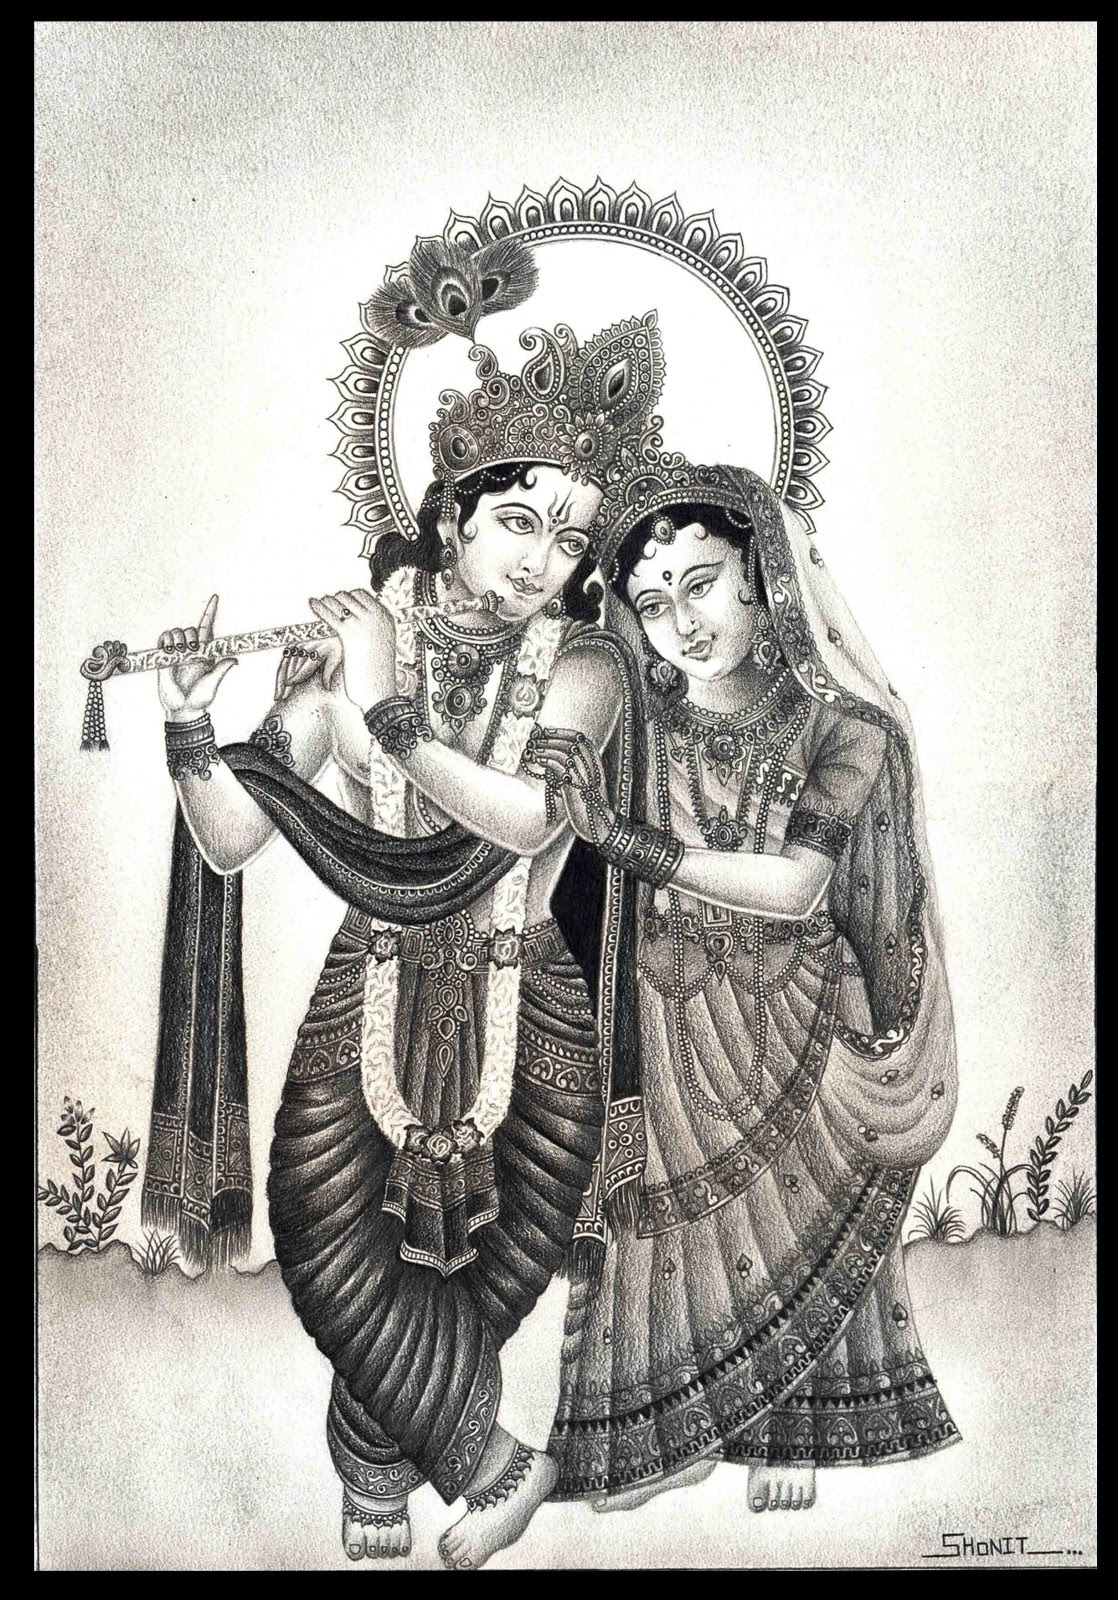  Pencil Drawing Krishna And Radha - pencildrawing2019